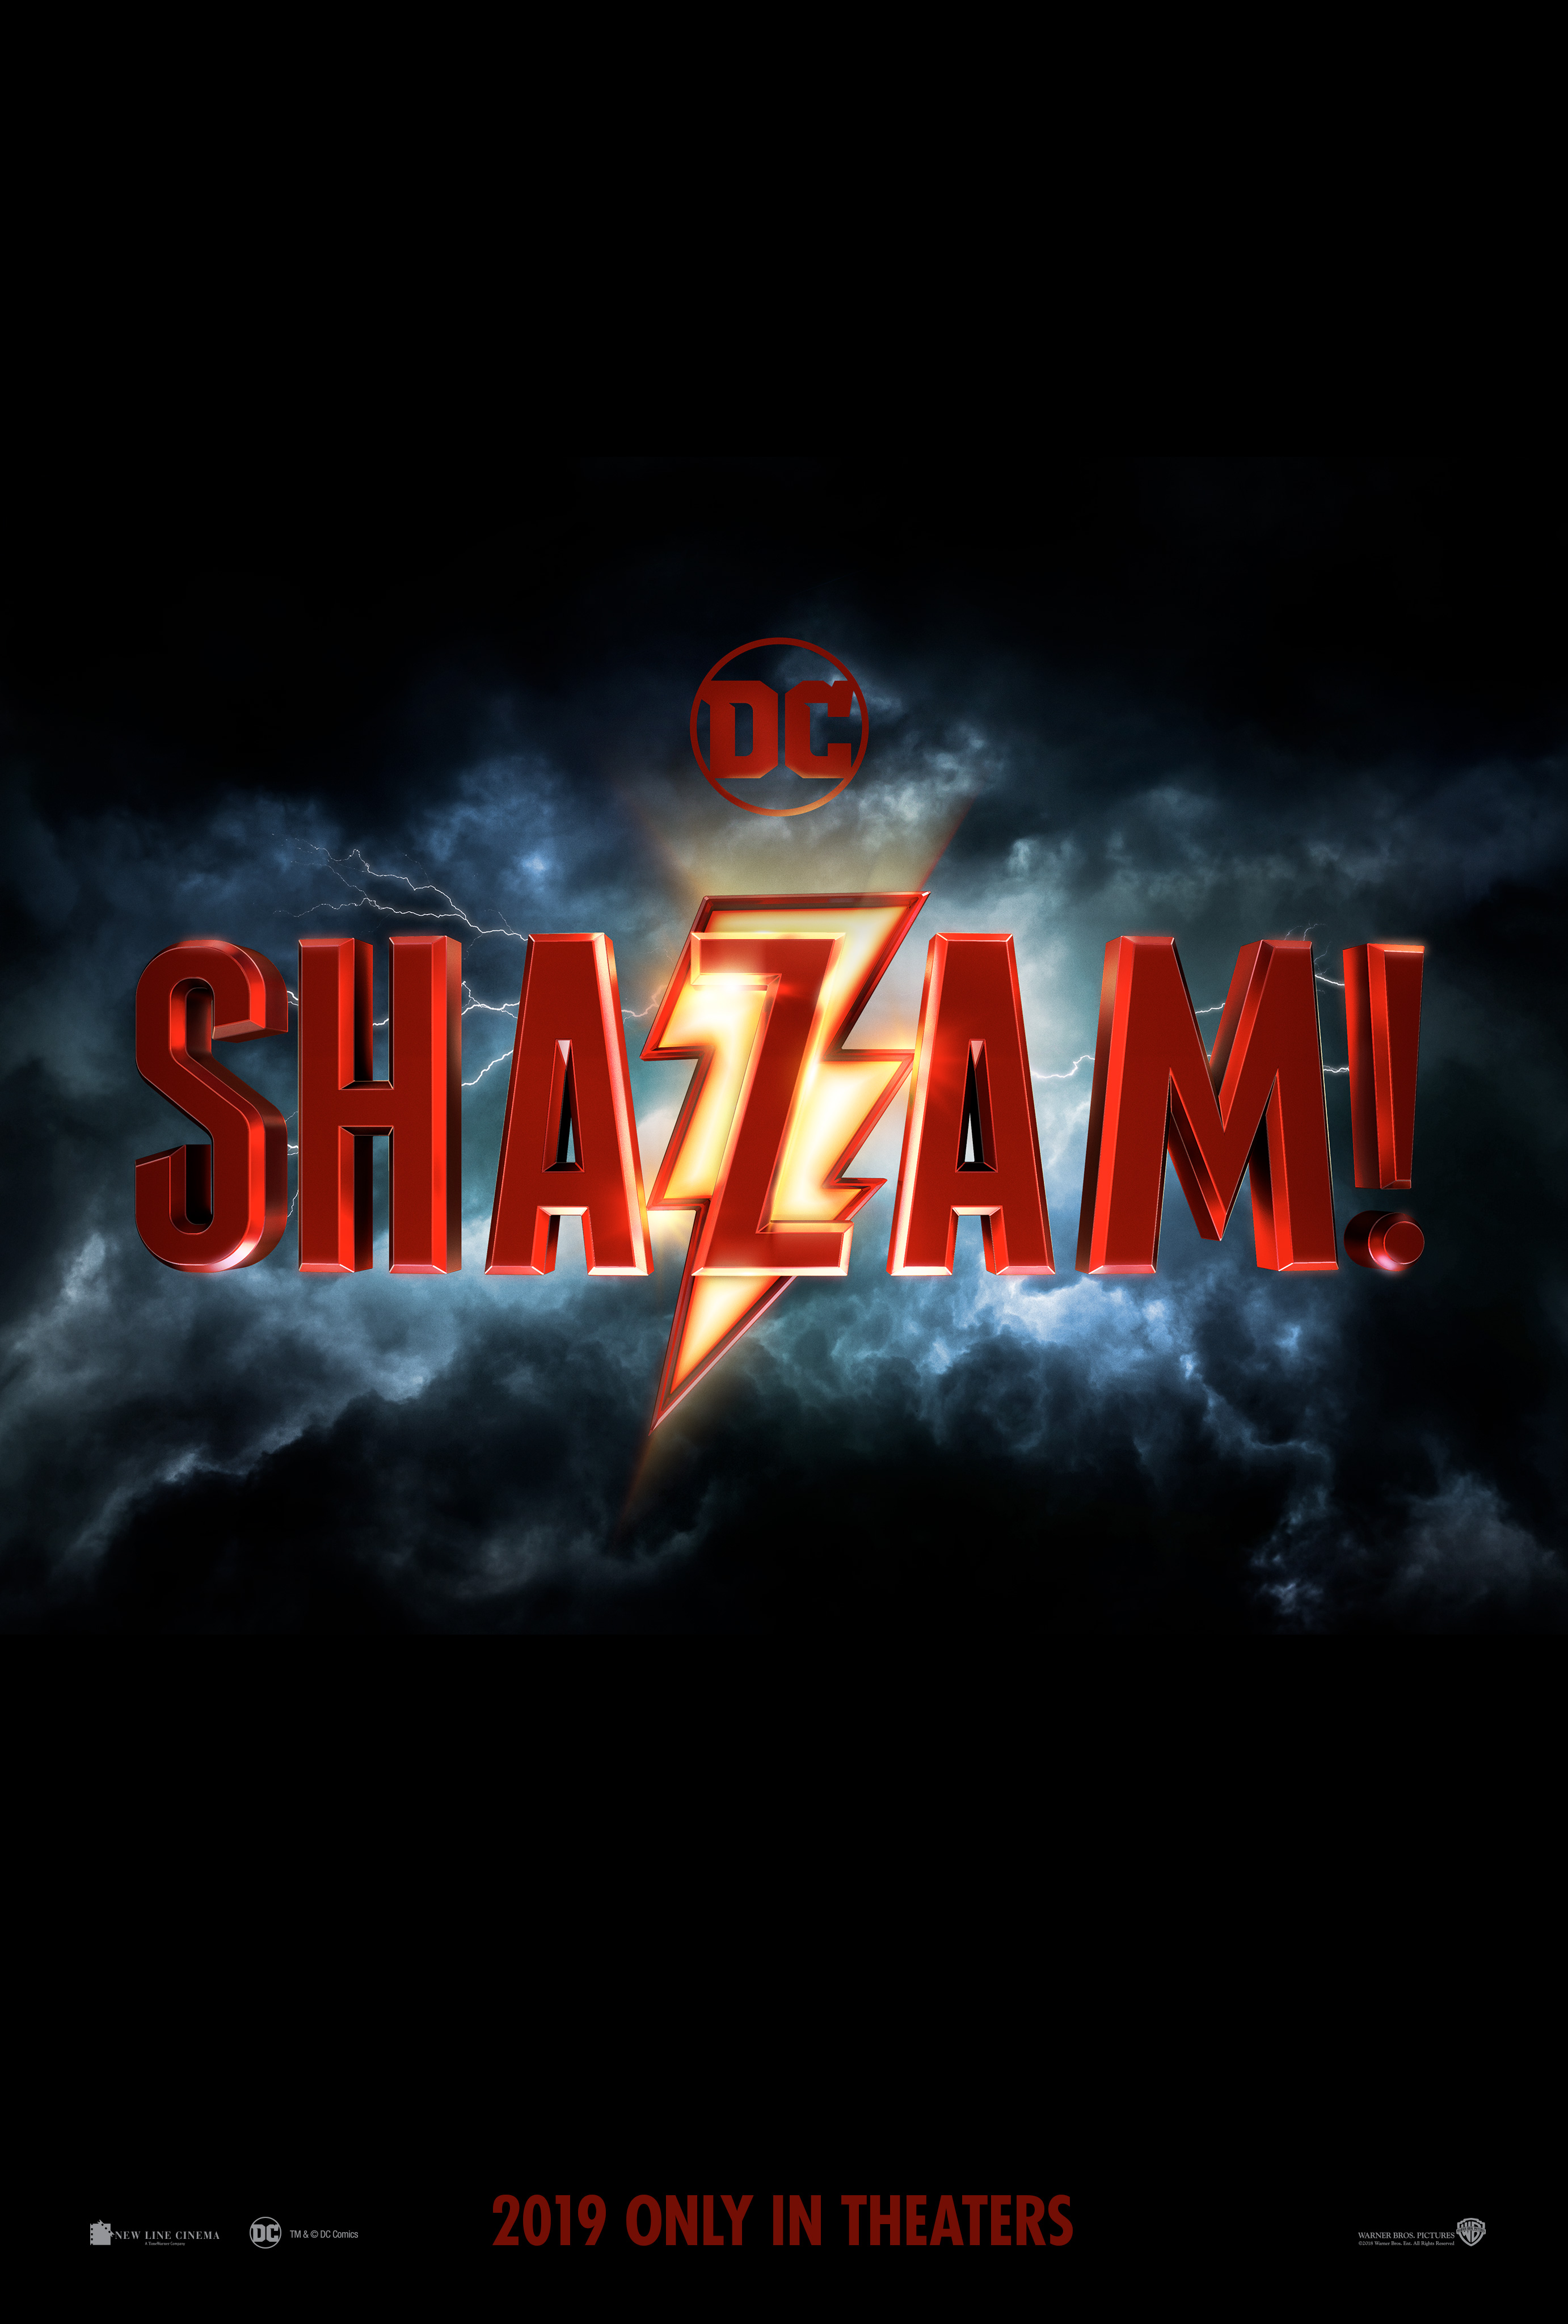 Shazam! Movie Logo Reveals New DCEU Film | Collider